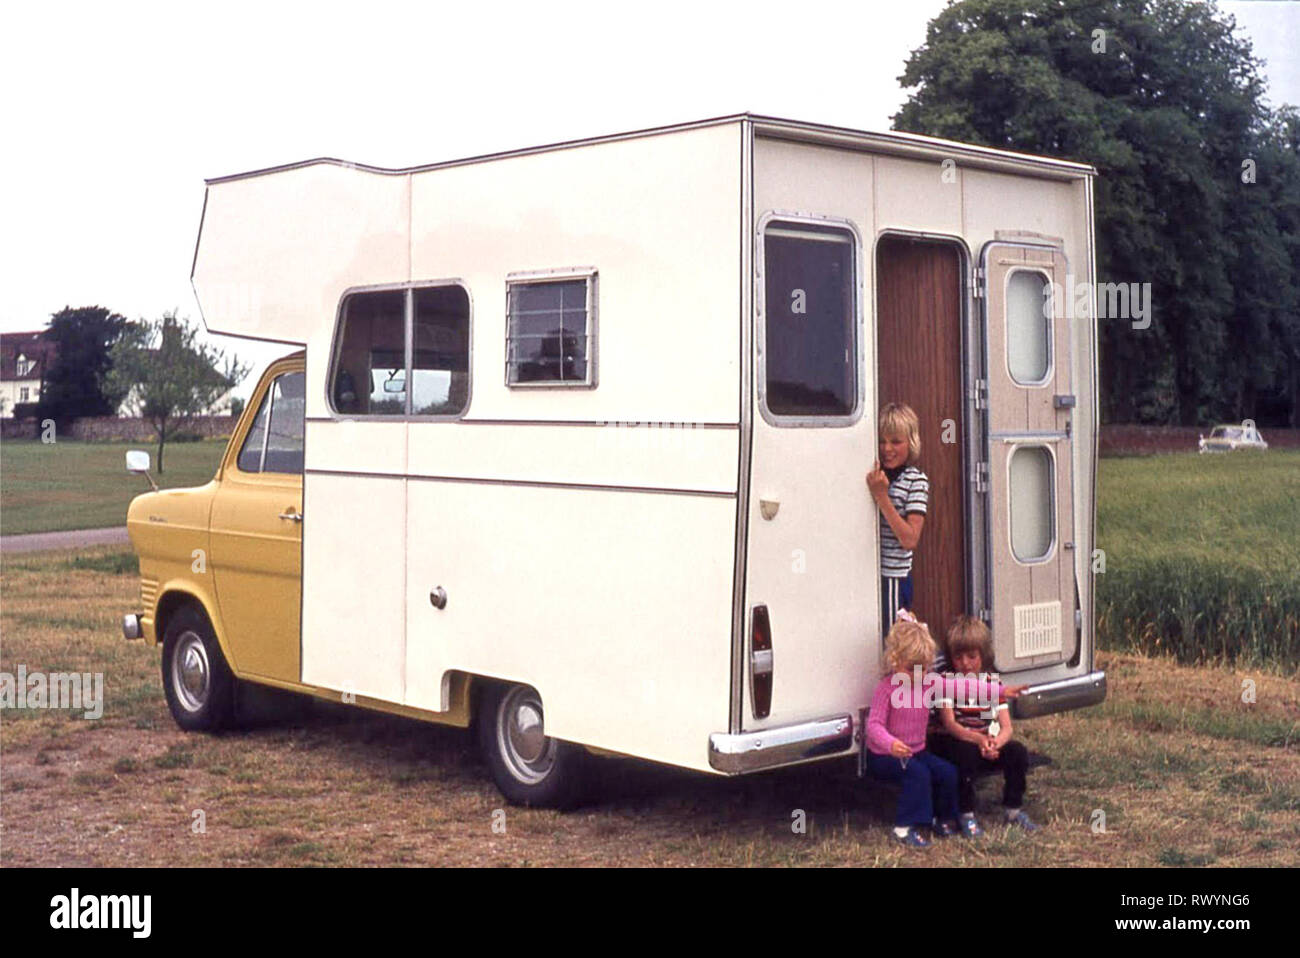 Zweck gemacht Wohnmobil Wohnmobil Wohnmobil gebaut 70er Jahre auf gelb Ford Transit Chassis 3 junge Kinder 70er Jahre Familienurlaub Reise Rund um East Anglia England Großbritannien zwei Jungen und ein Mädchen Stockfoto